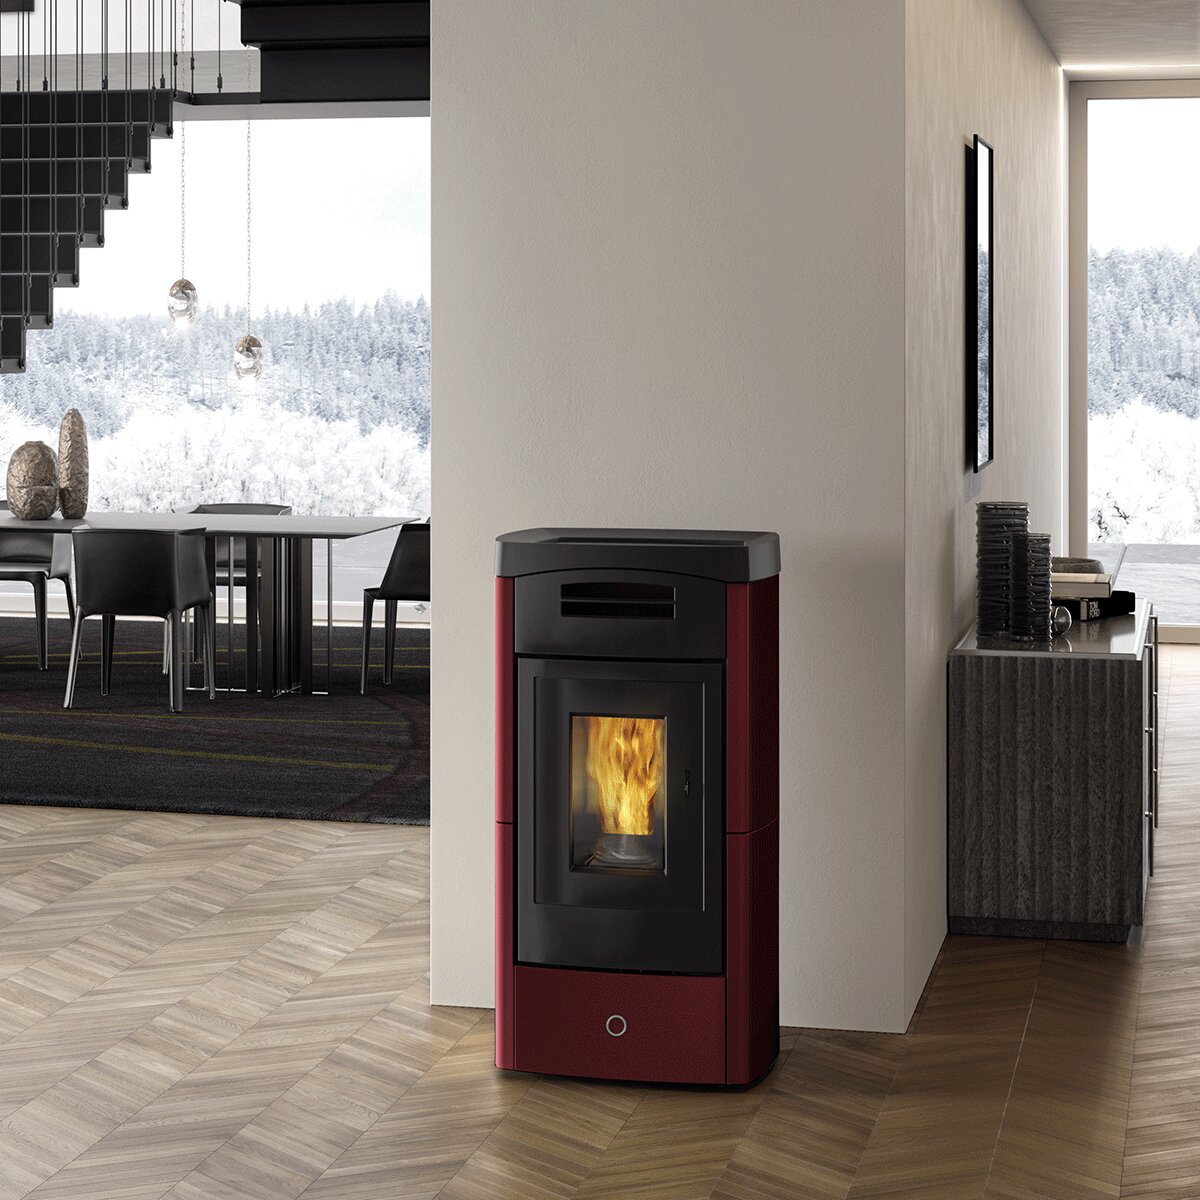 Pellet stove EK63 DAILY130++ - Edilkamin group - 12.5 kW with ducted air Bordeaux